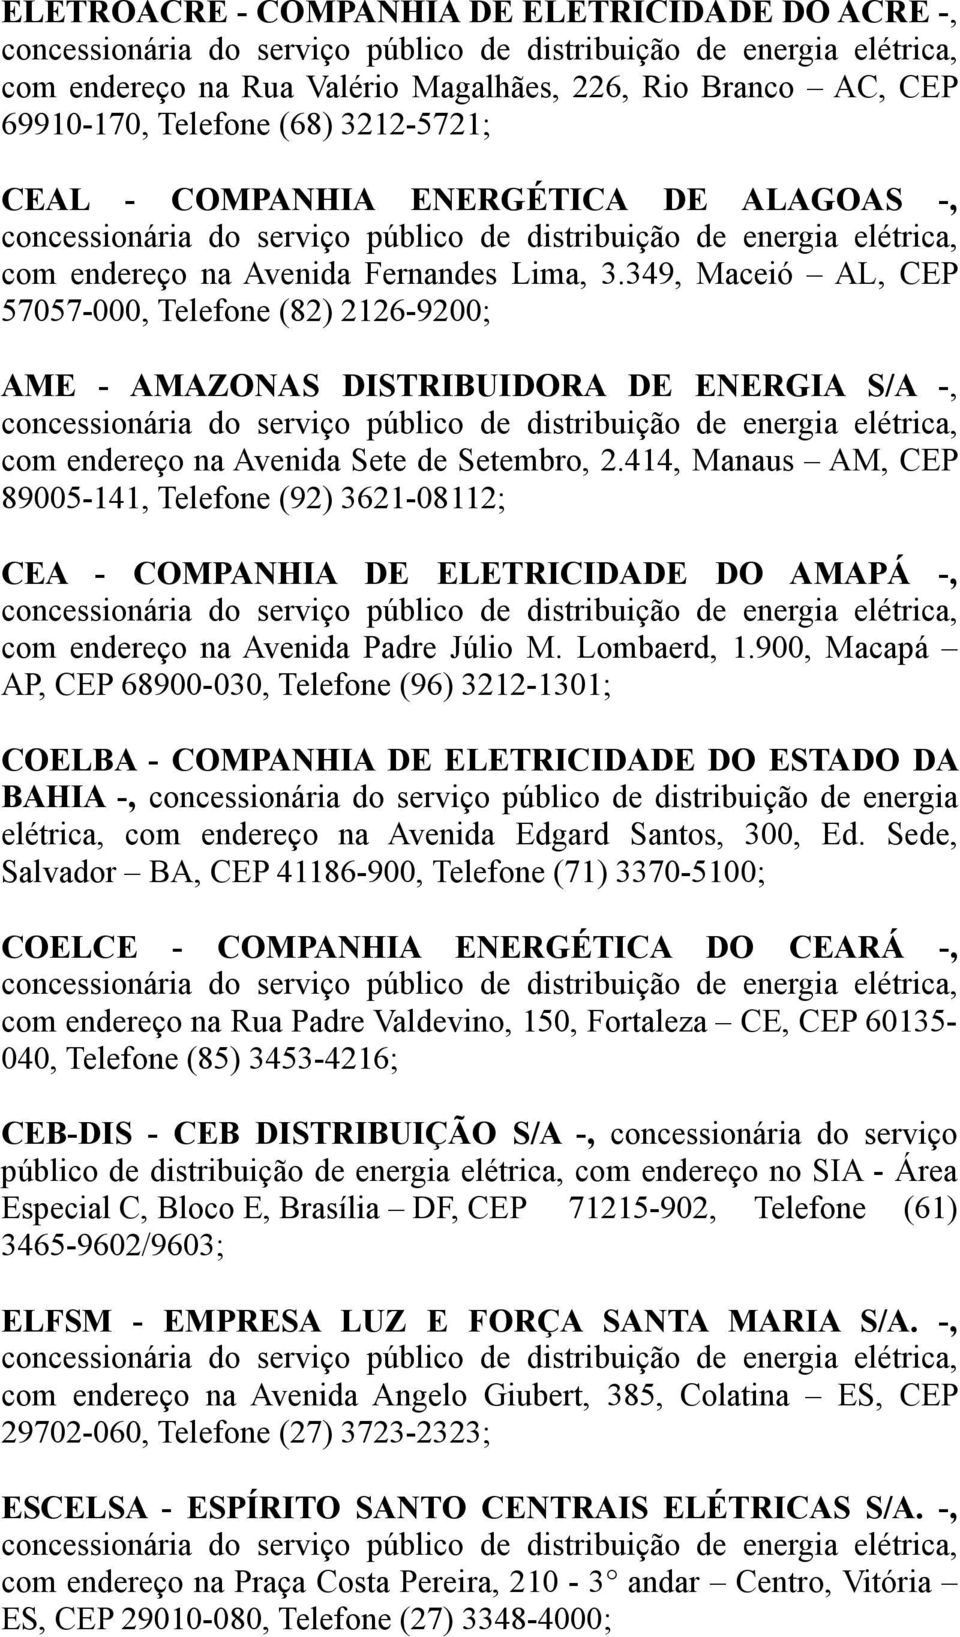 349, Maceió AL, CEP 57057-000, Telefone (82) 2126-9200; AME - AMAZONAS DISTRIBUIDORA DE ENERGIA S/A -, concessionária do serviço público de distribuição de energia elétrica, com endereço na Avenida